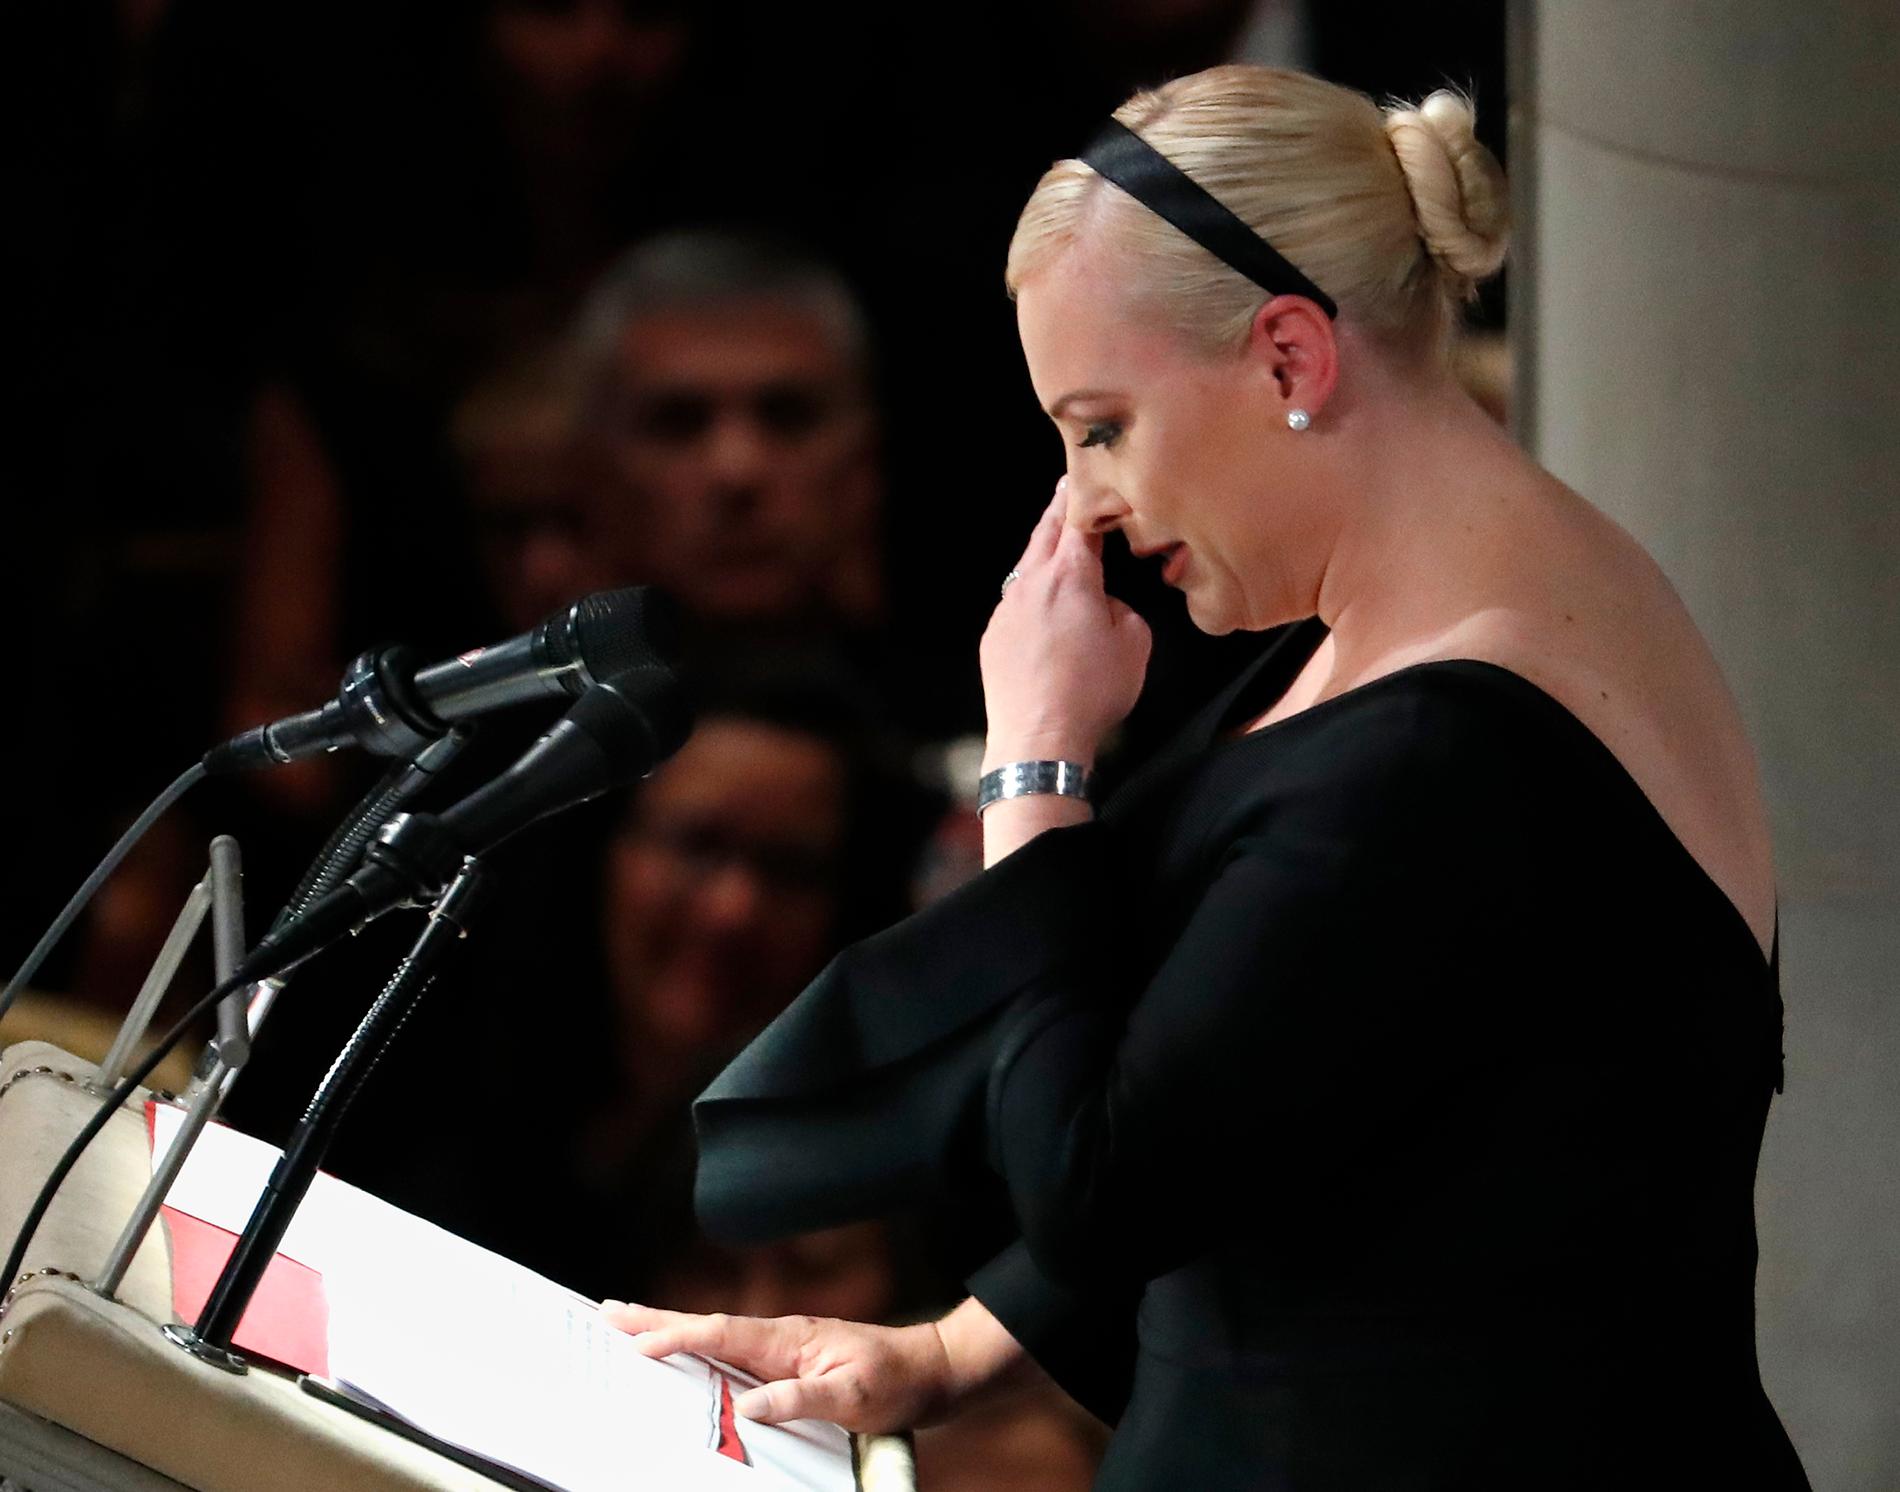 Lördagens ceremoni inleddes med ett mycket känslosamt tal av John McCains dotter Meghan McCain.